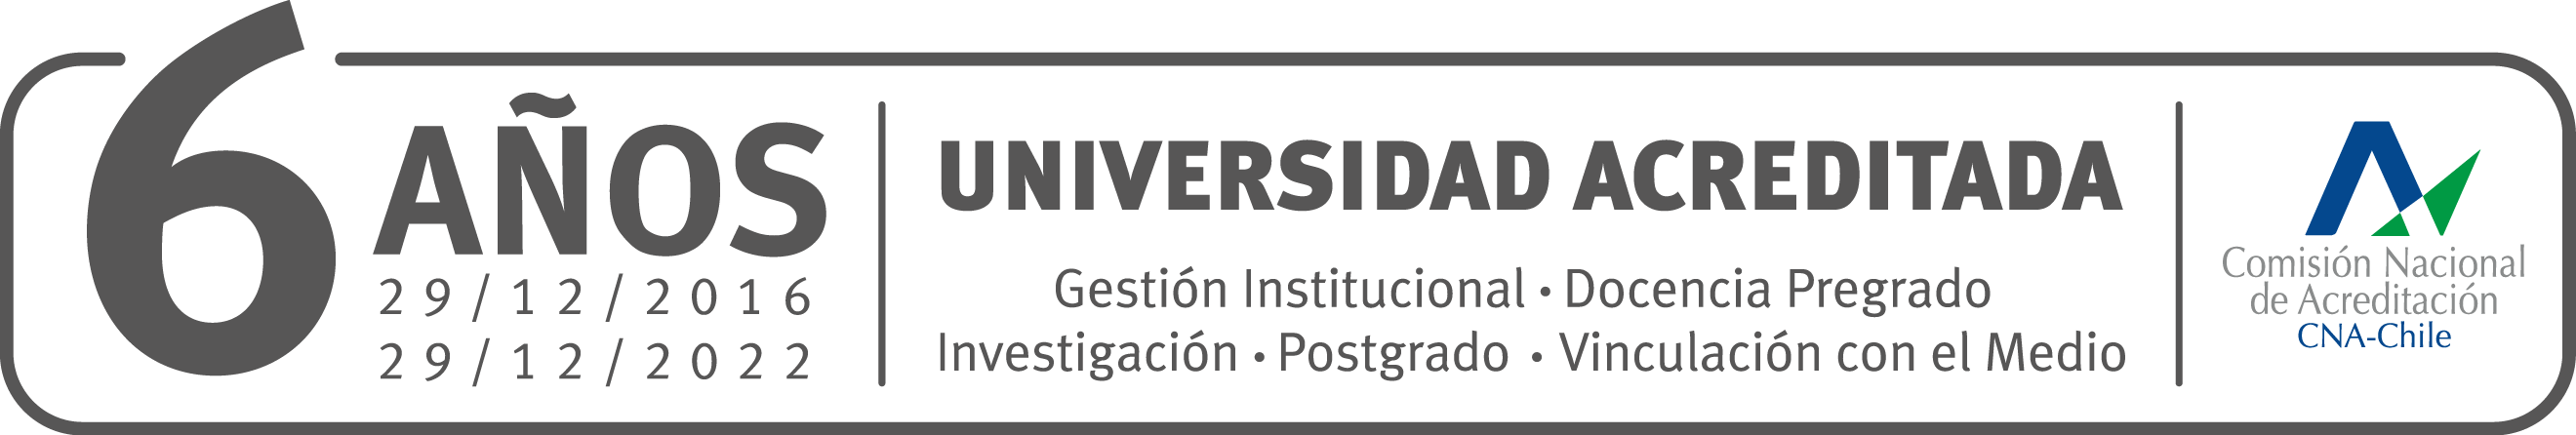 PNG logo acreditacion institucional USM